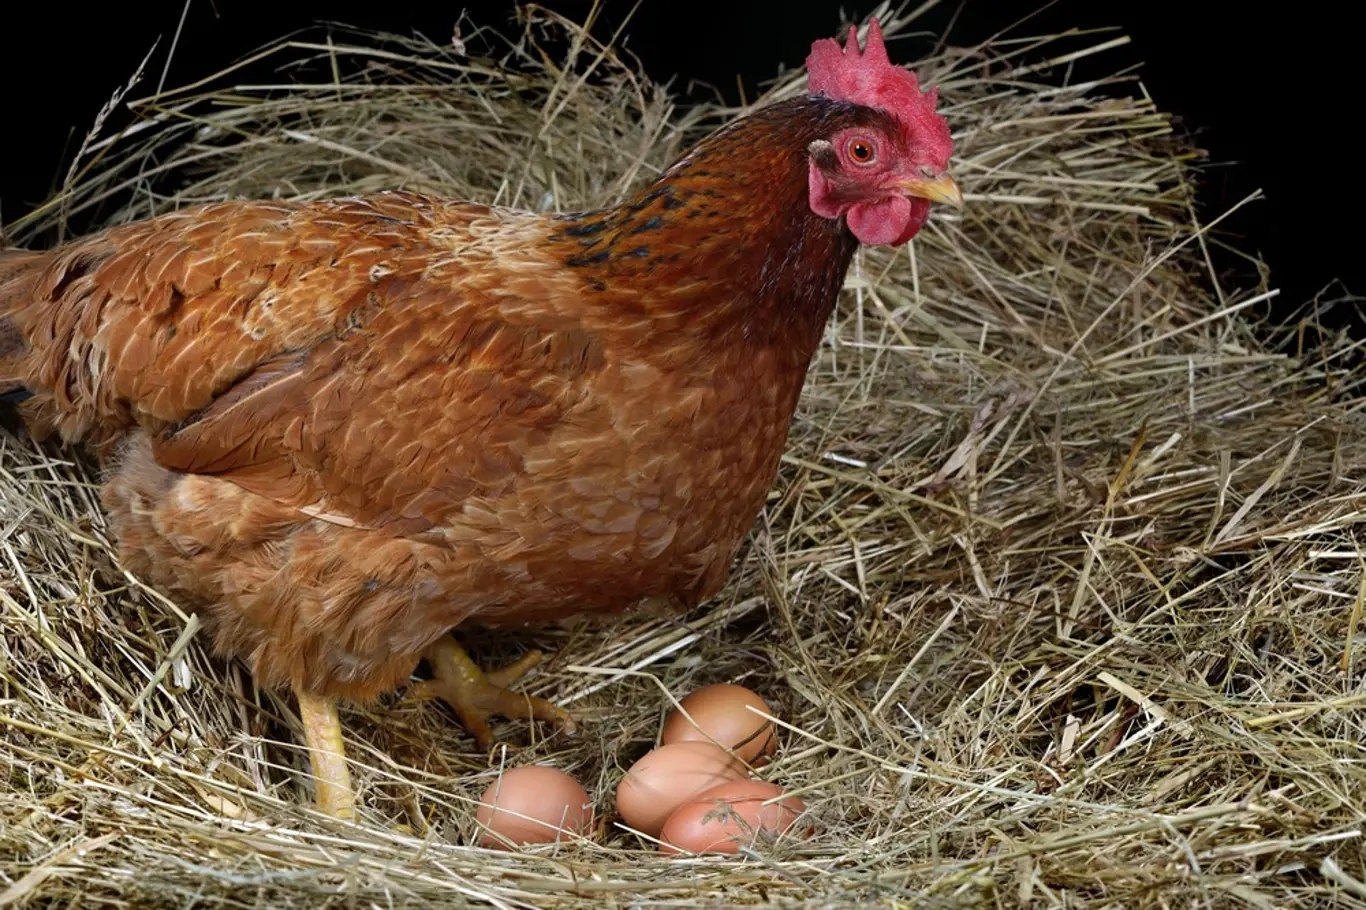 Čistokrevná slepice snese za rok v průměru 180 vajec.